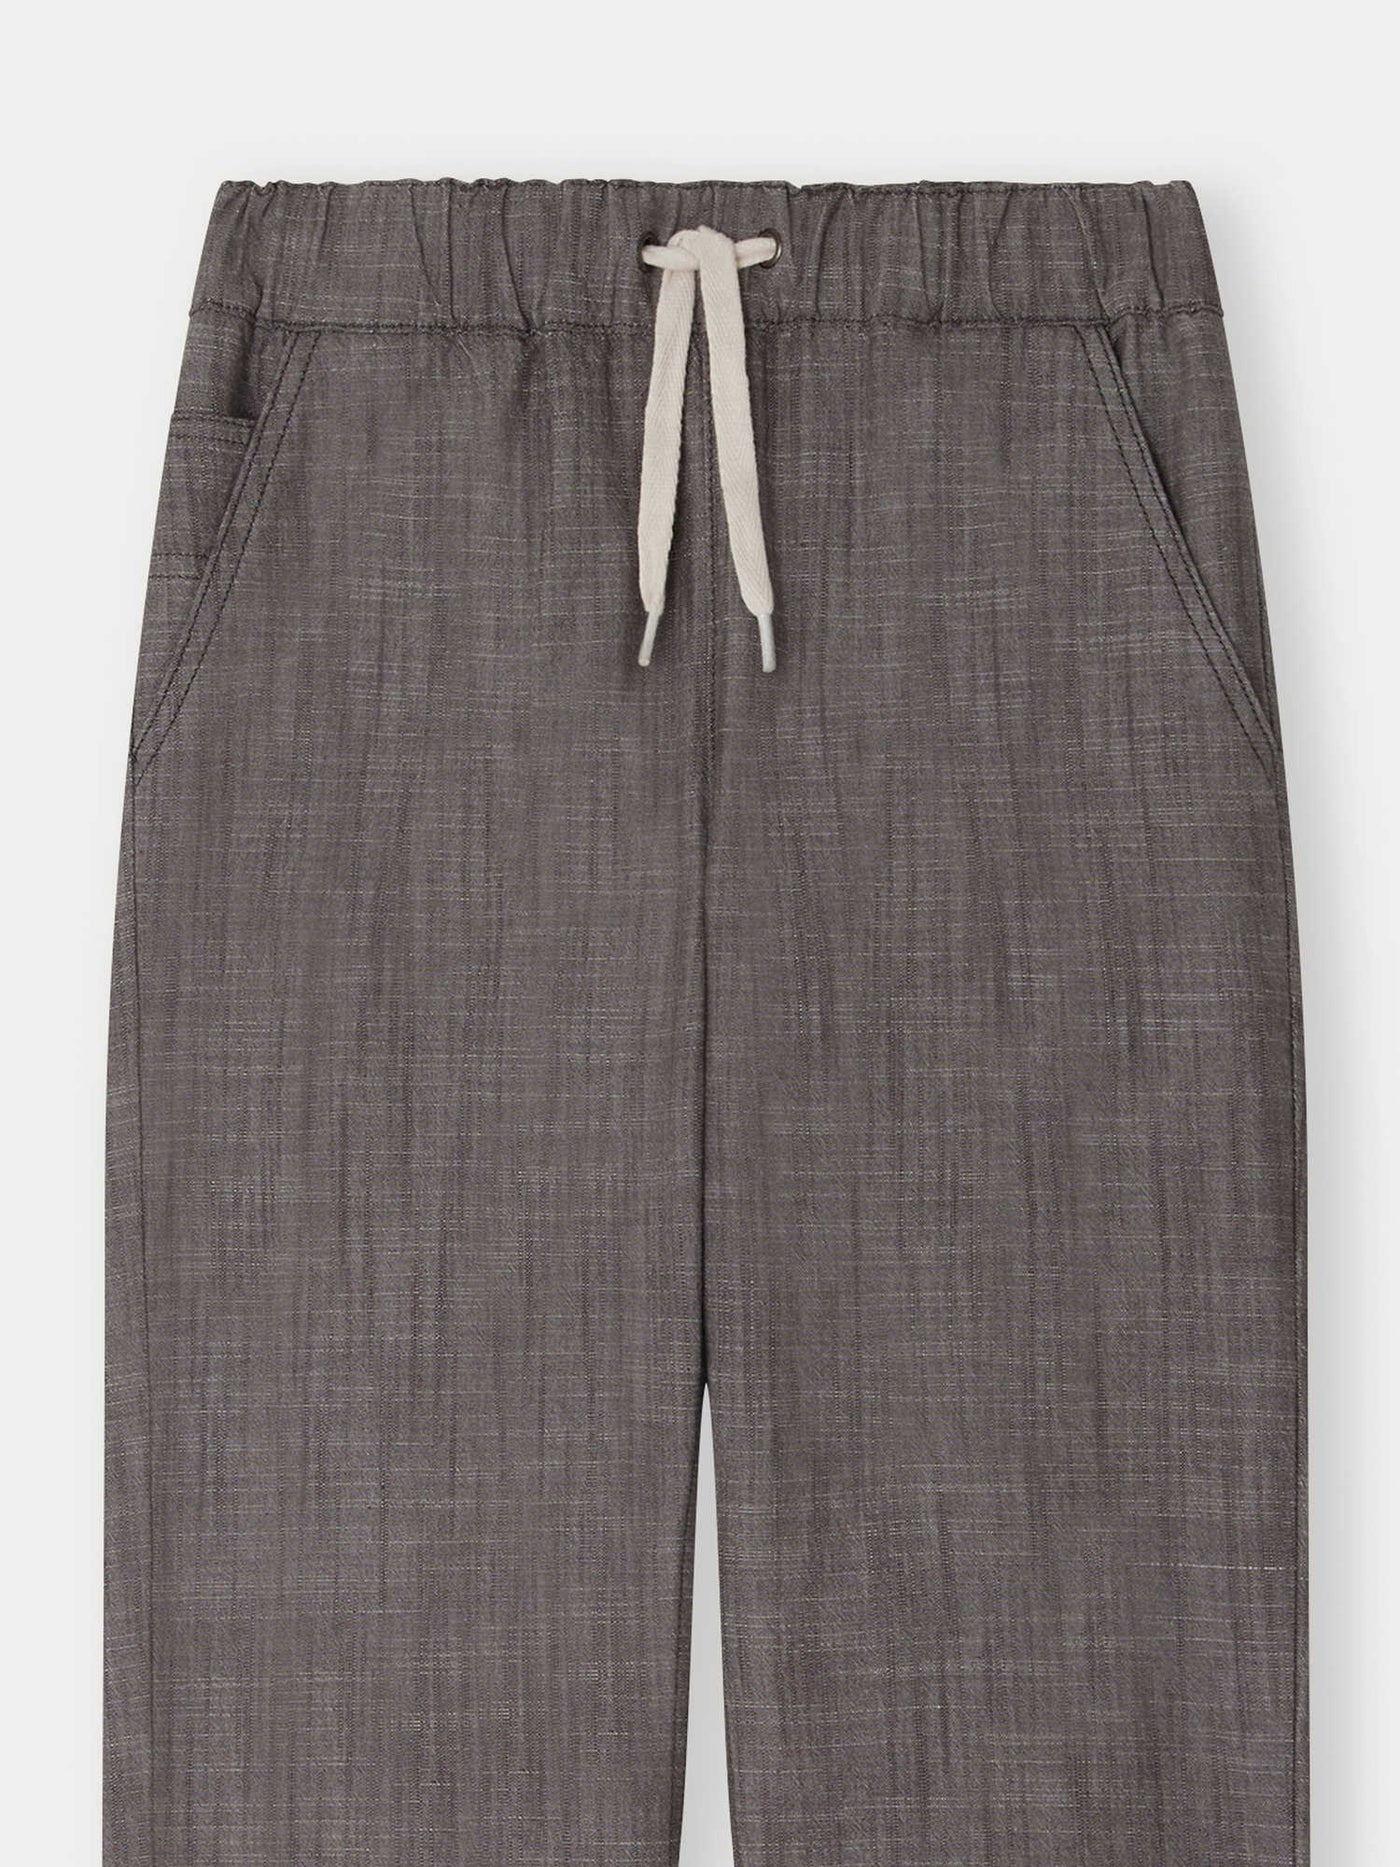 Pantalon Connell gris ardoise